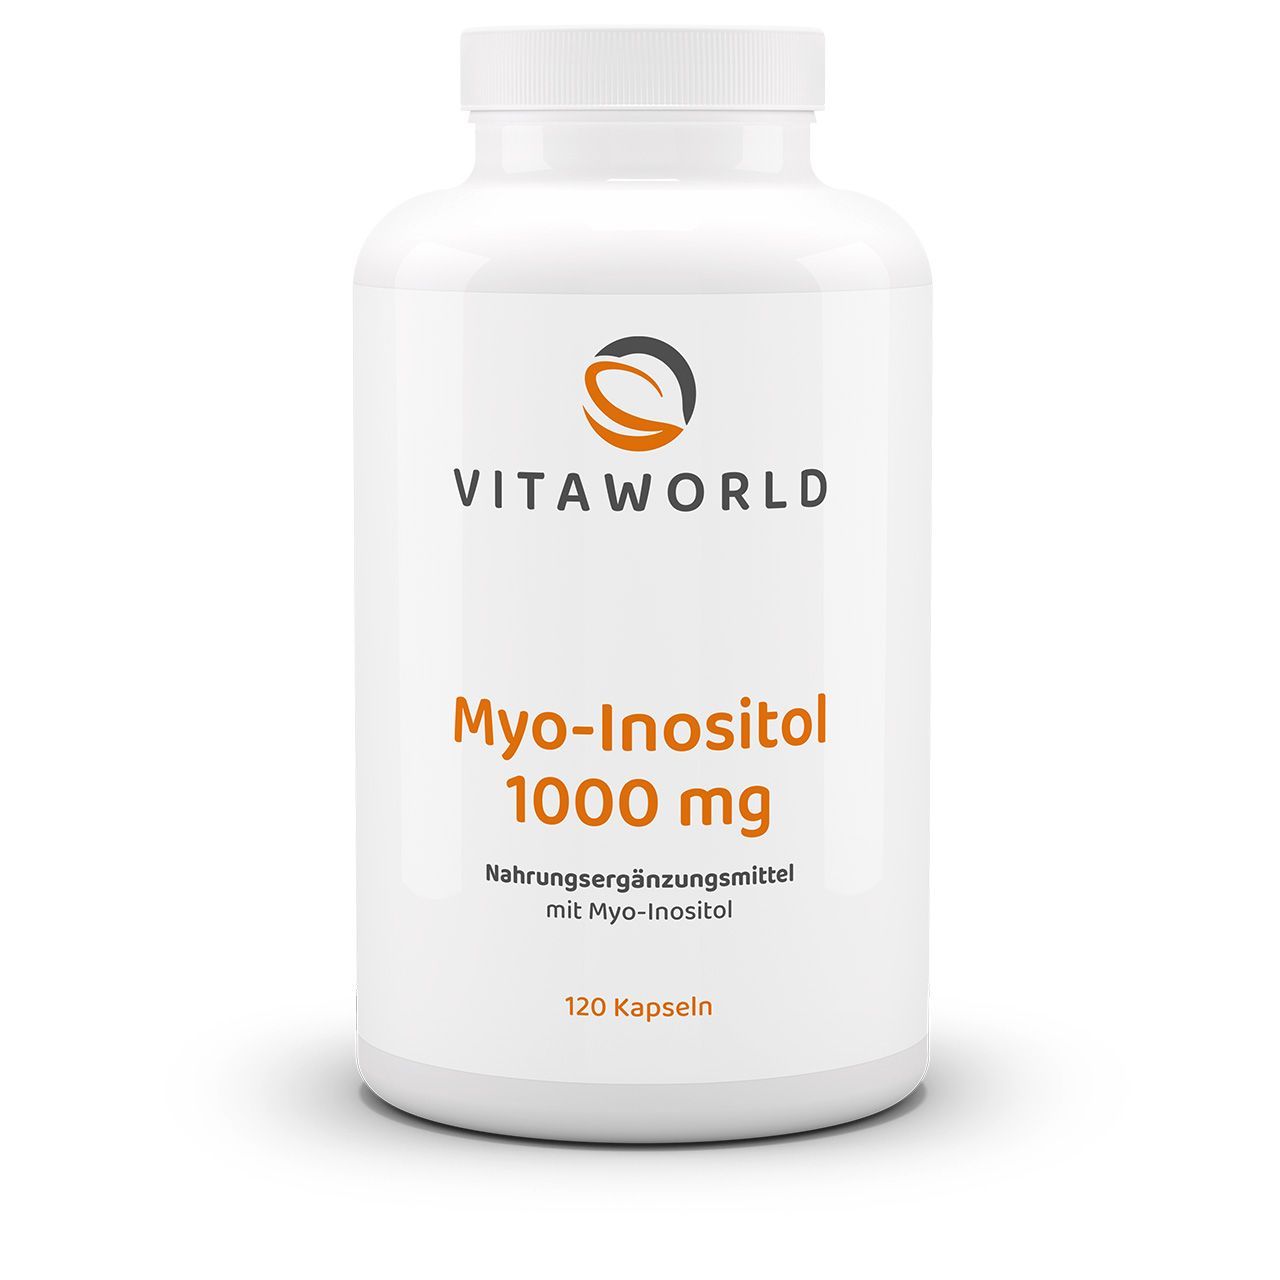 Vitaworld Myo-Inositol 1000 mg | 120 Kapseln | vegan | gluten- und laktosefrei